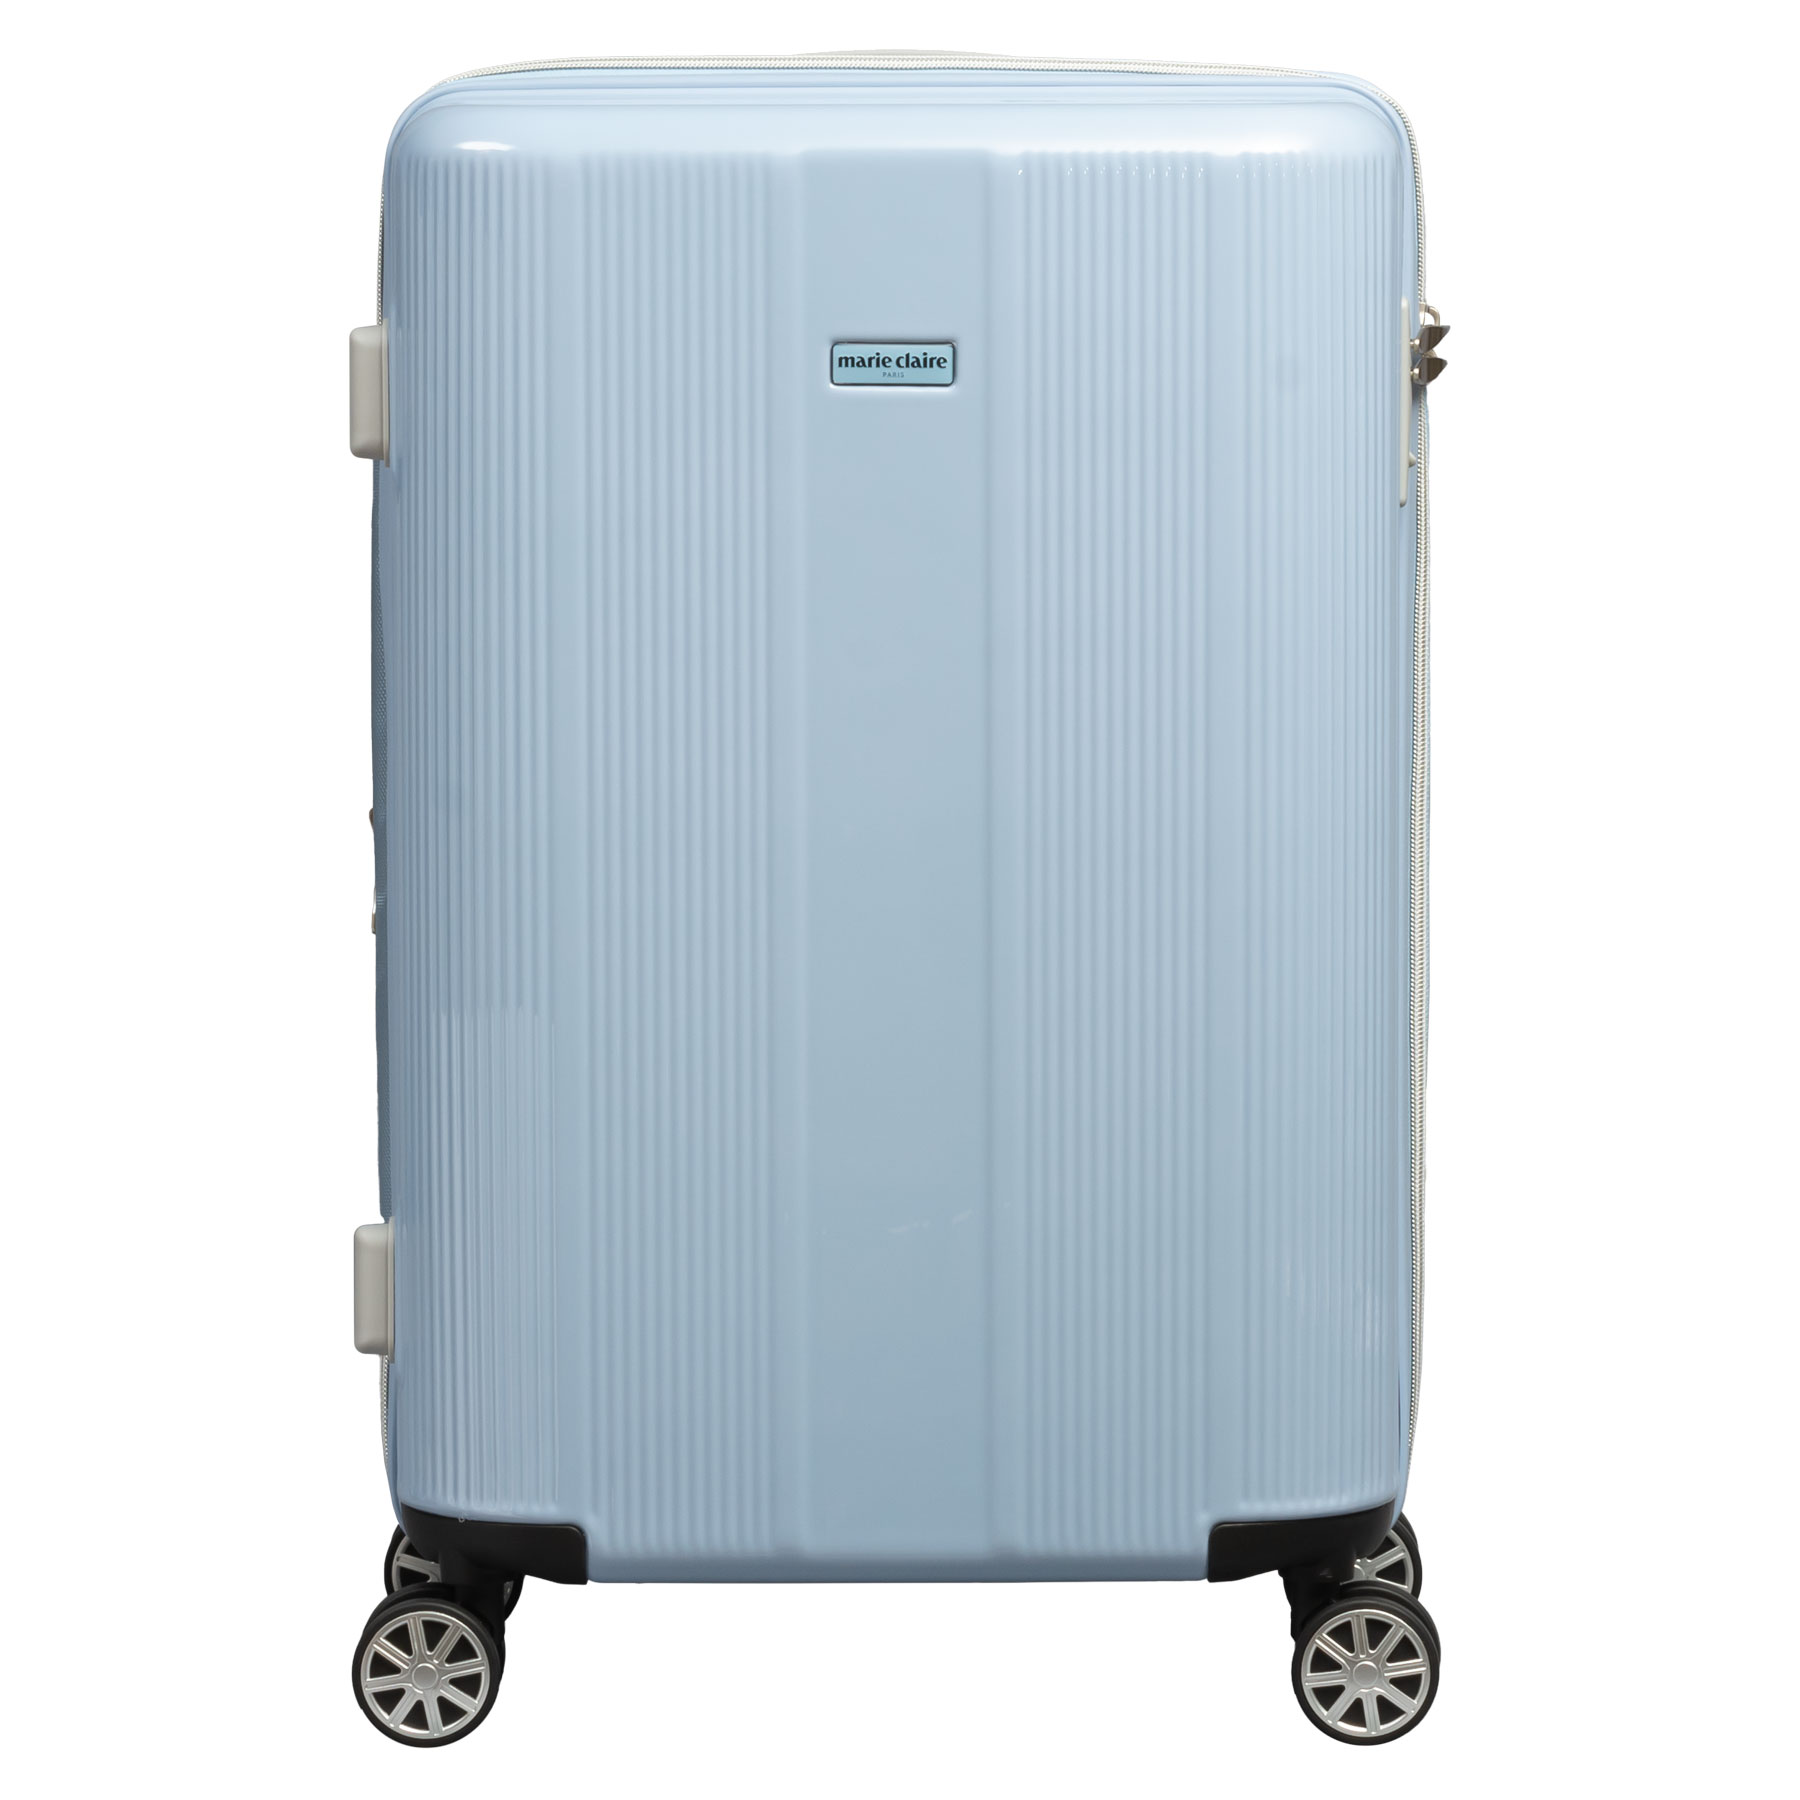 スーツケース Mサイズ 45〜50L marie claire マリ・クレール 2〜4泊 拡張 キャリーケース 240-5001